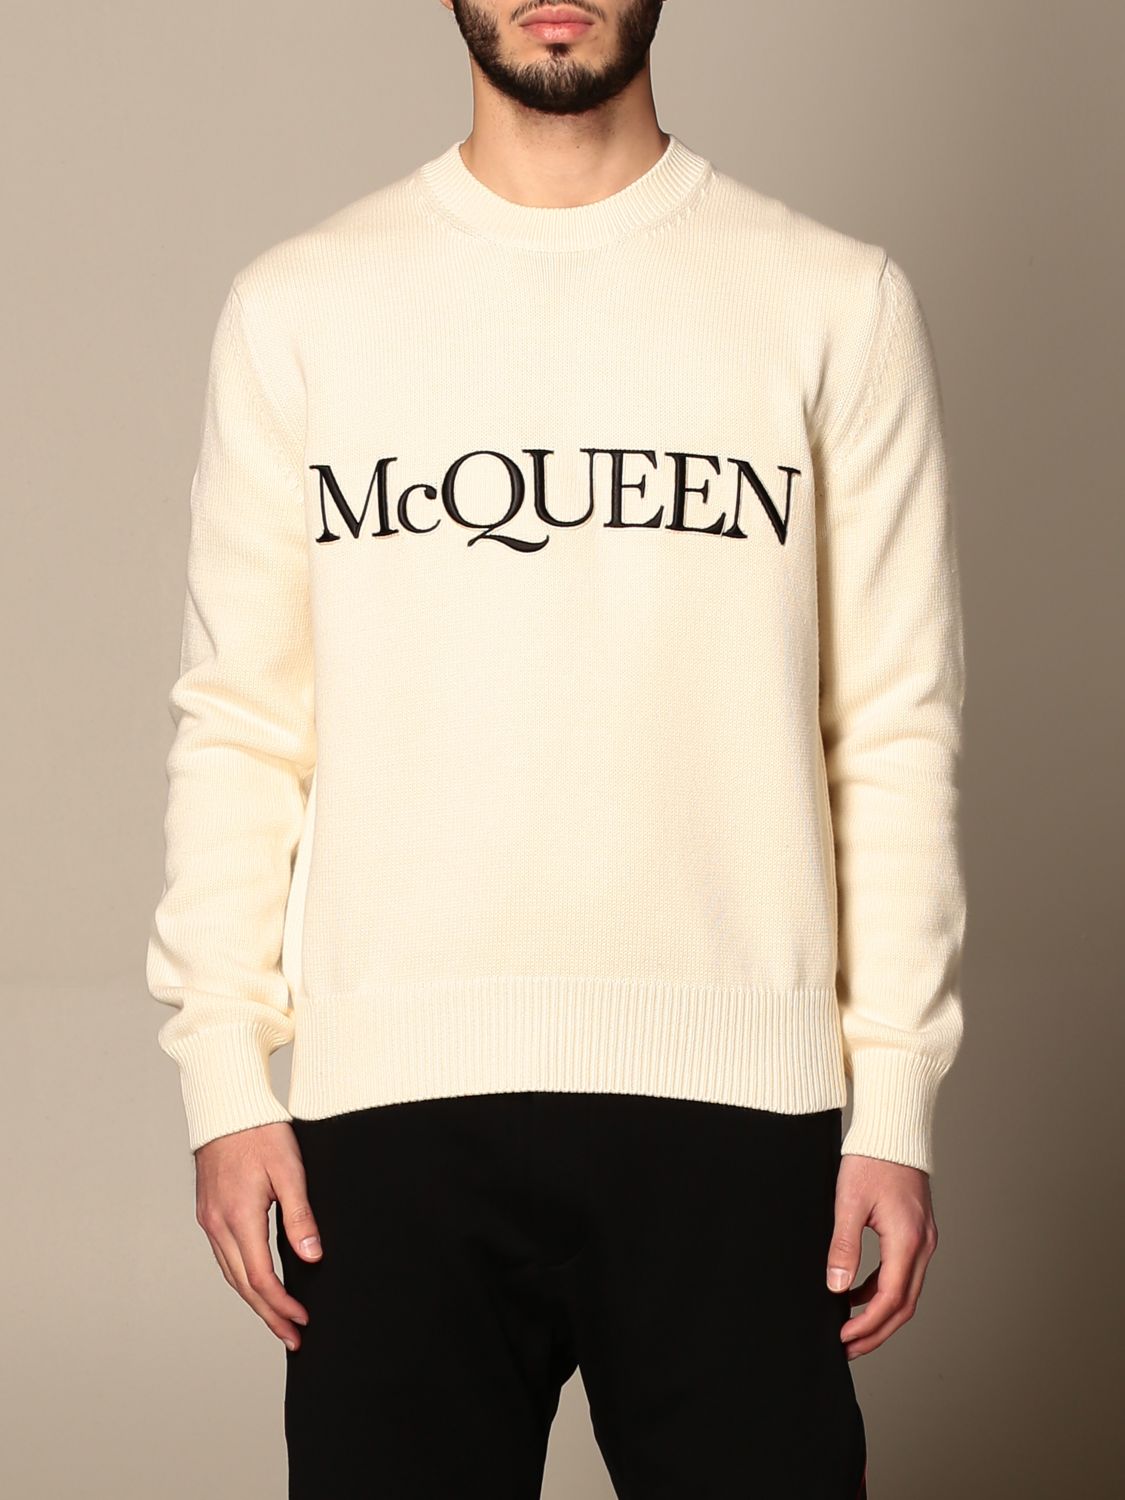 ALEXANDER MCQUEEN: Sweater men - Ivory ...